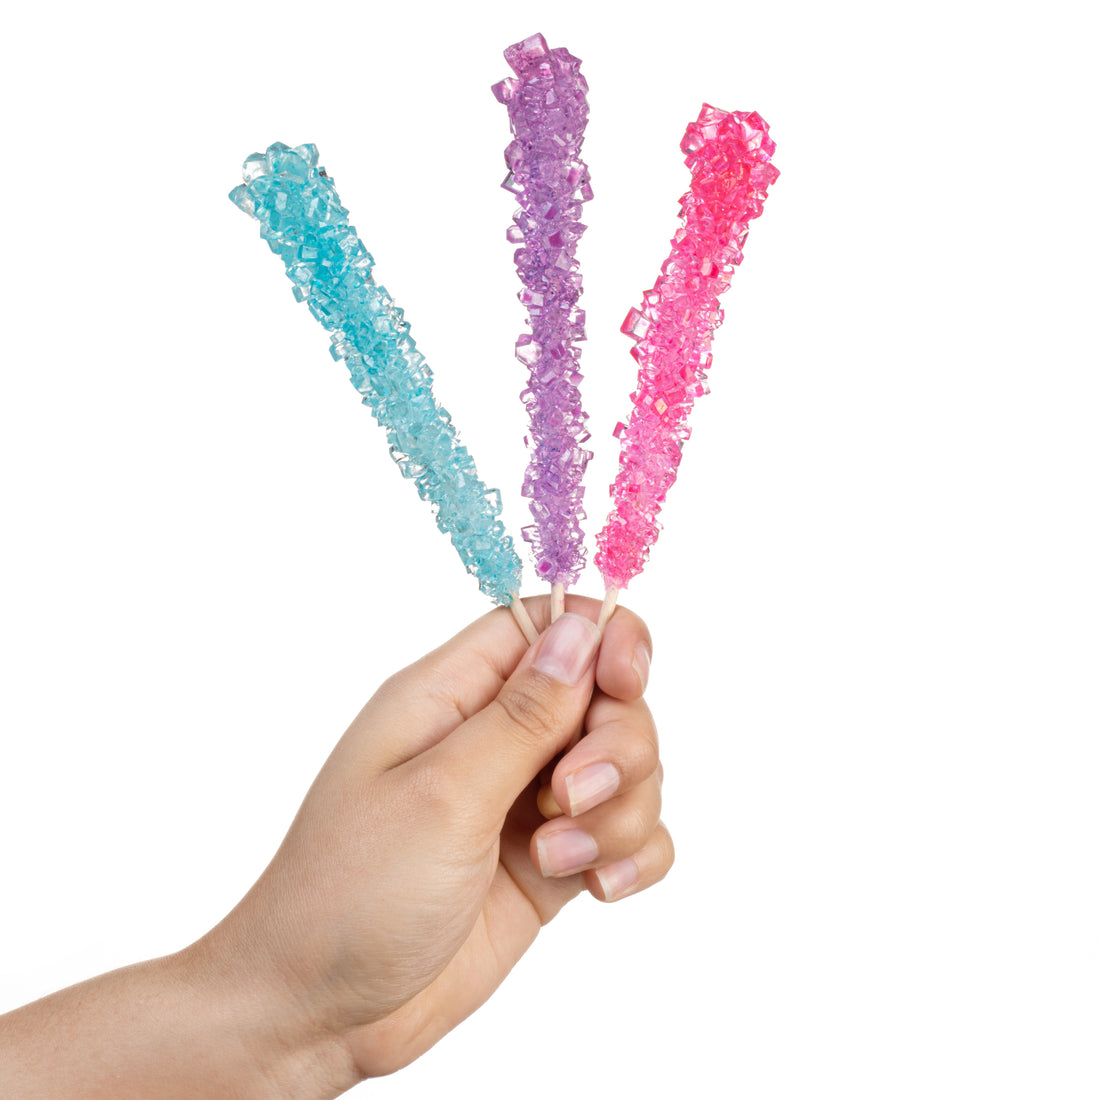 Mermaid Rock Candy Sugar Sticks